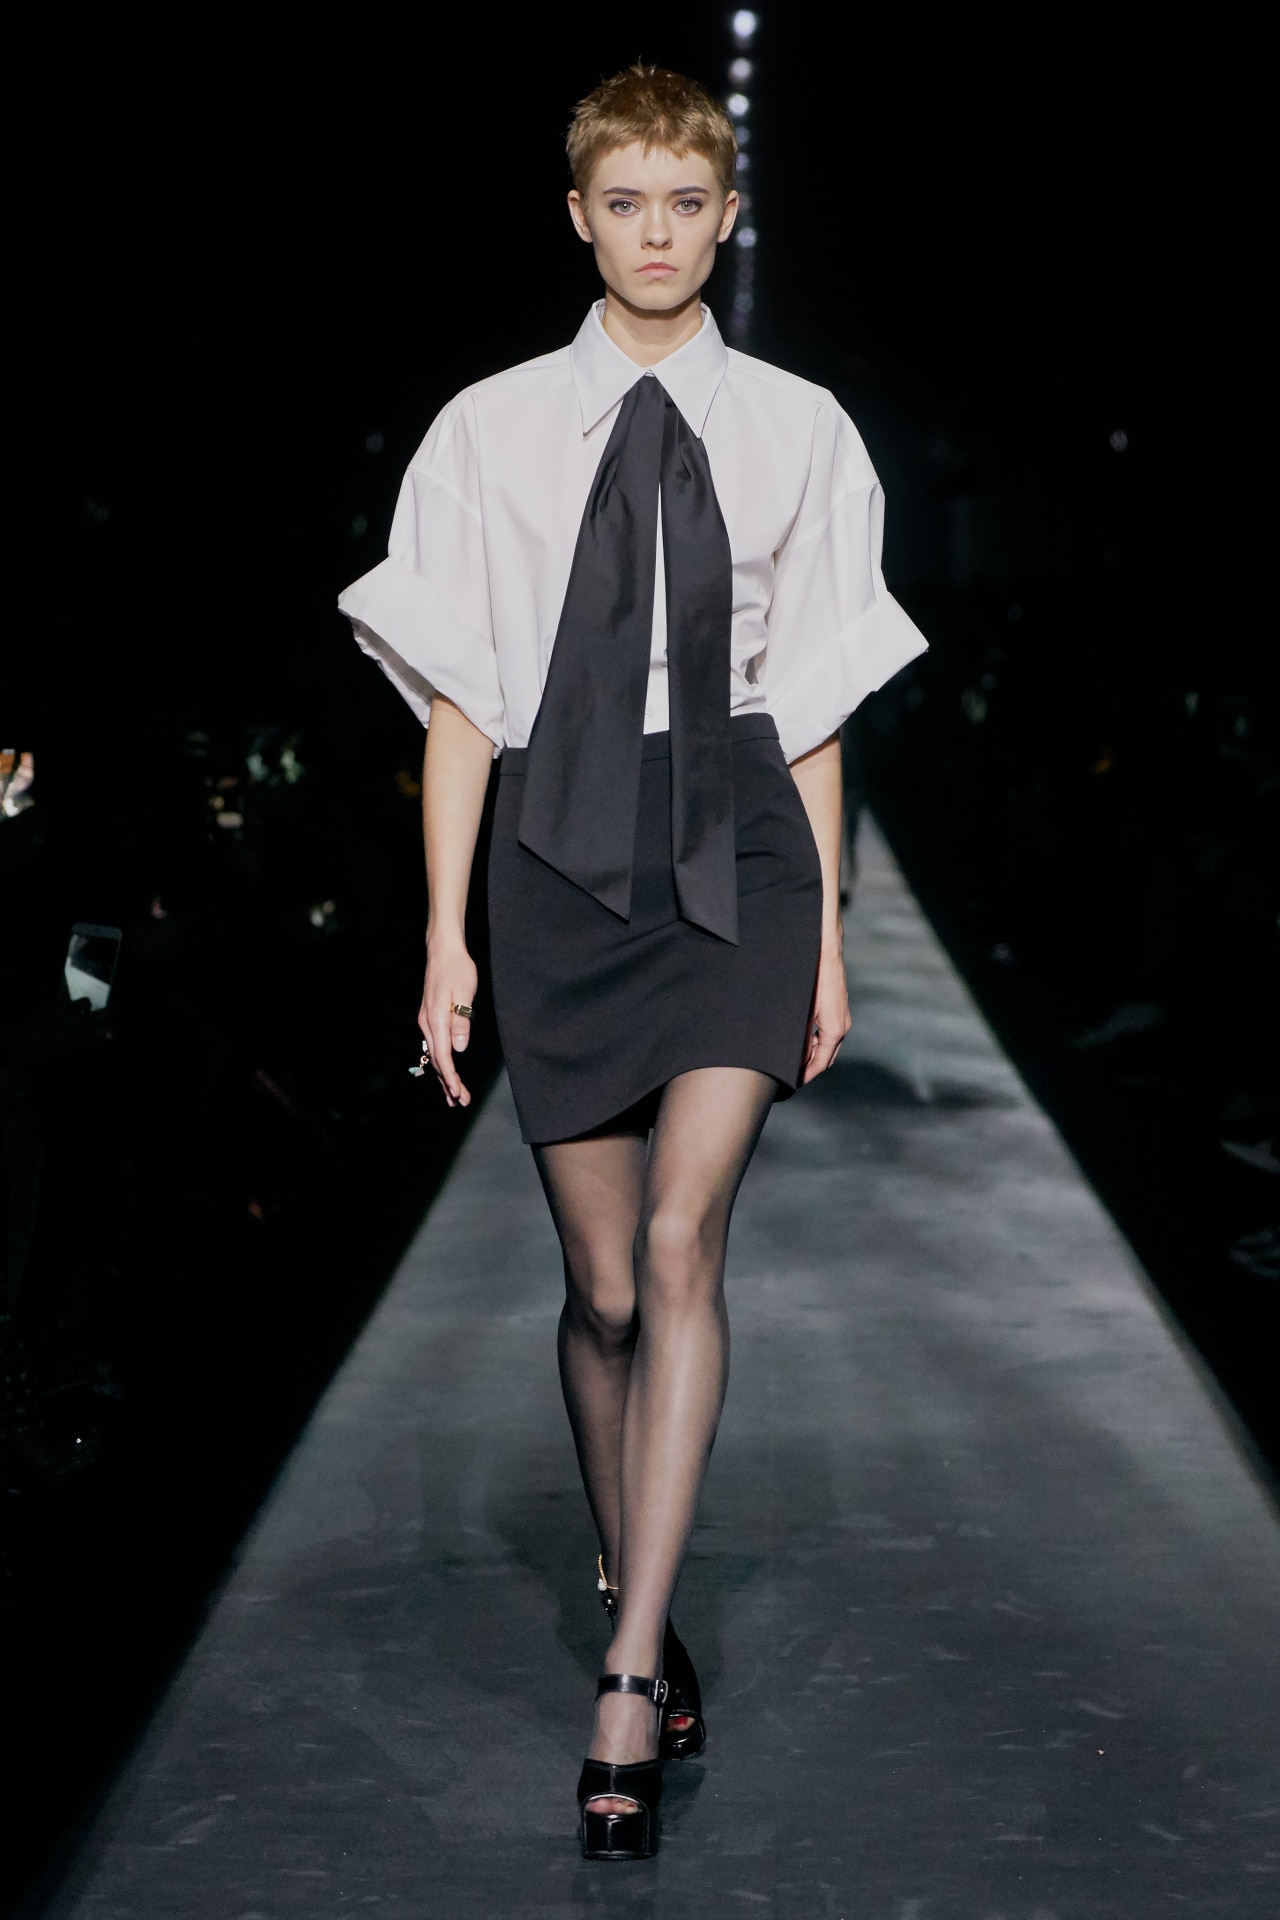 Week Fashion - \'19\'20 at autumn/winter Vogue Australia Menkes Paris Suzy ready-to-wear